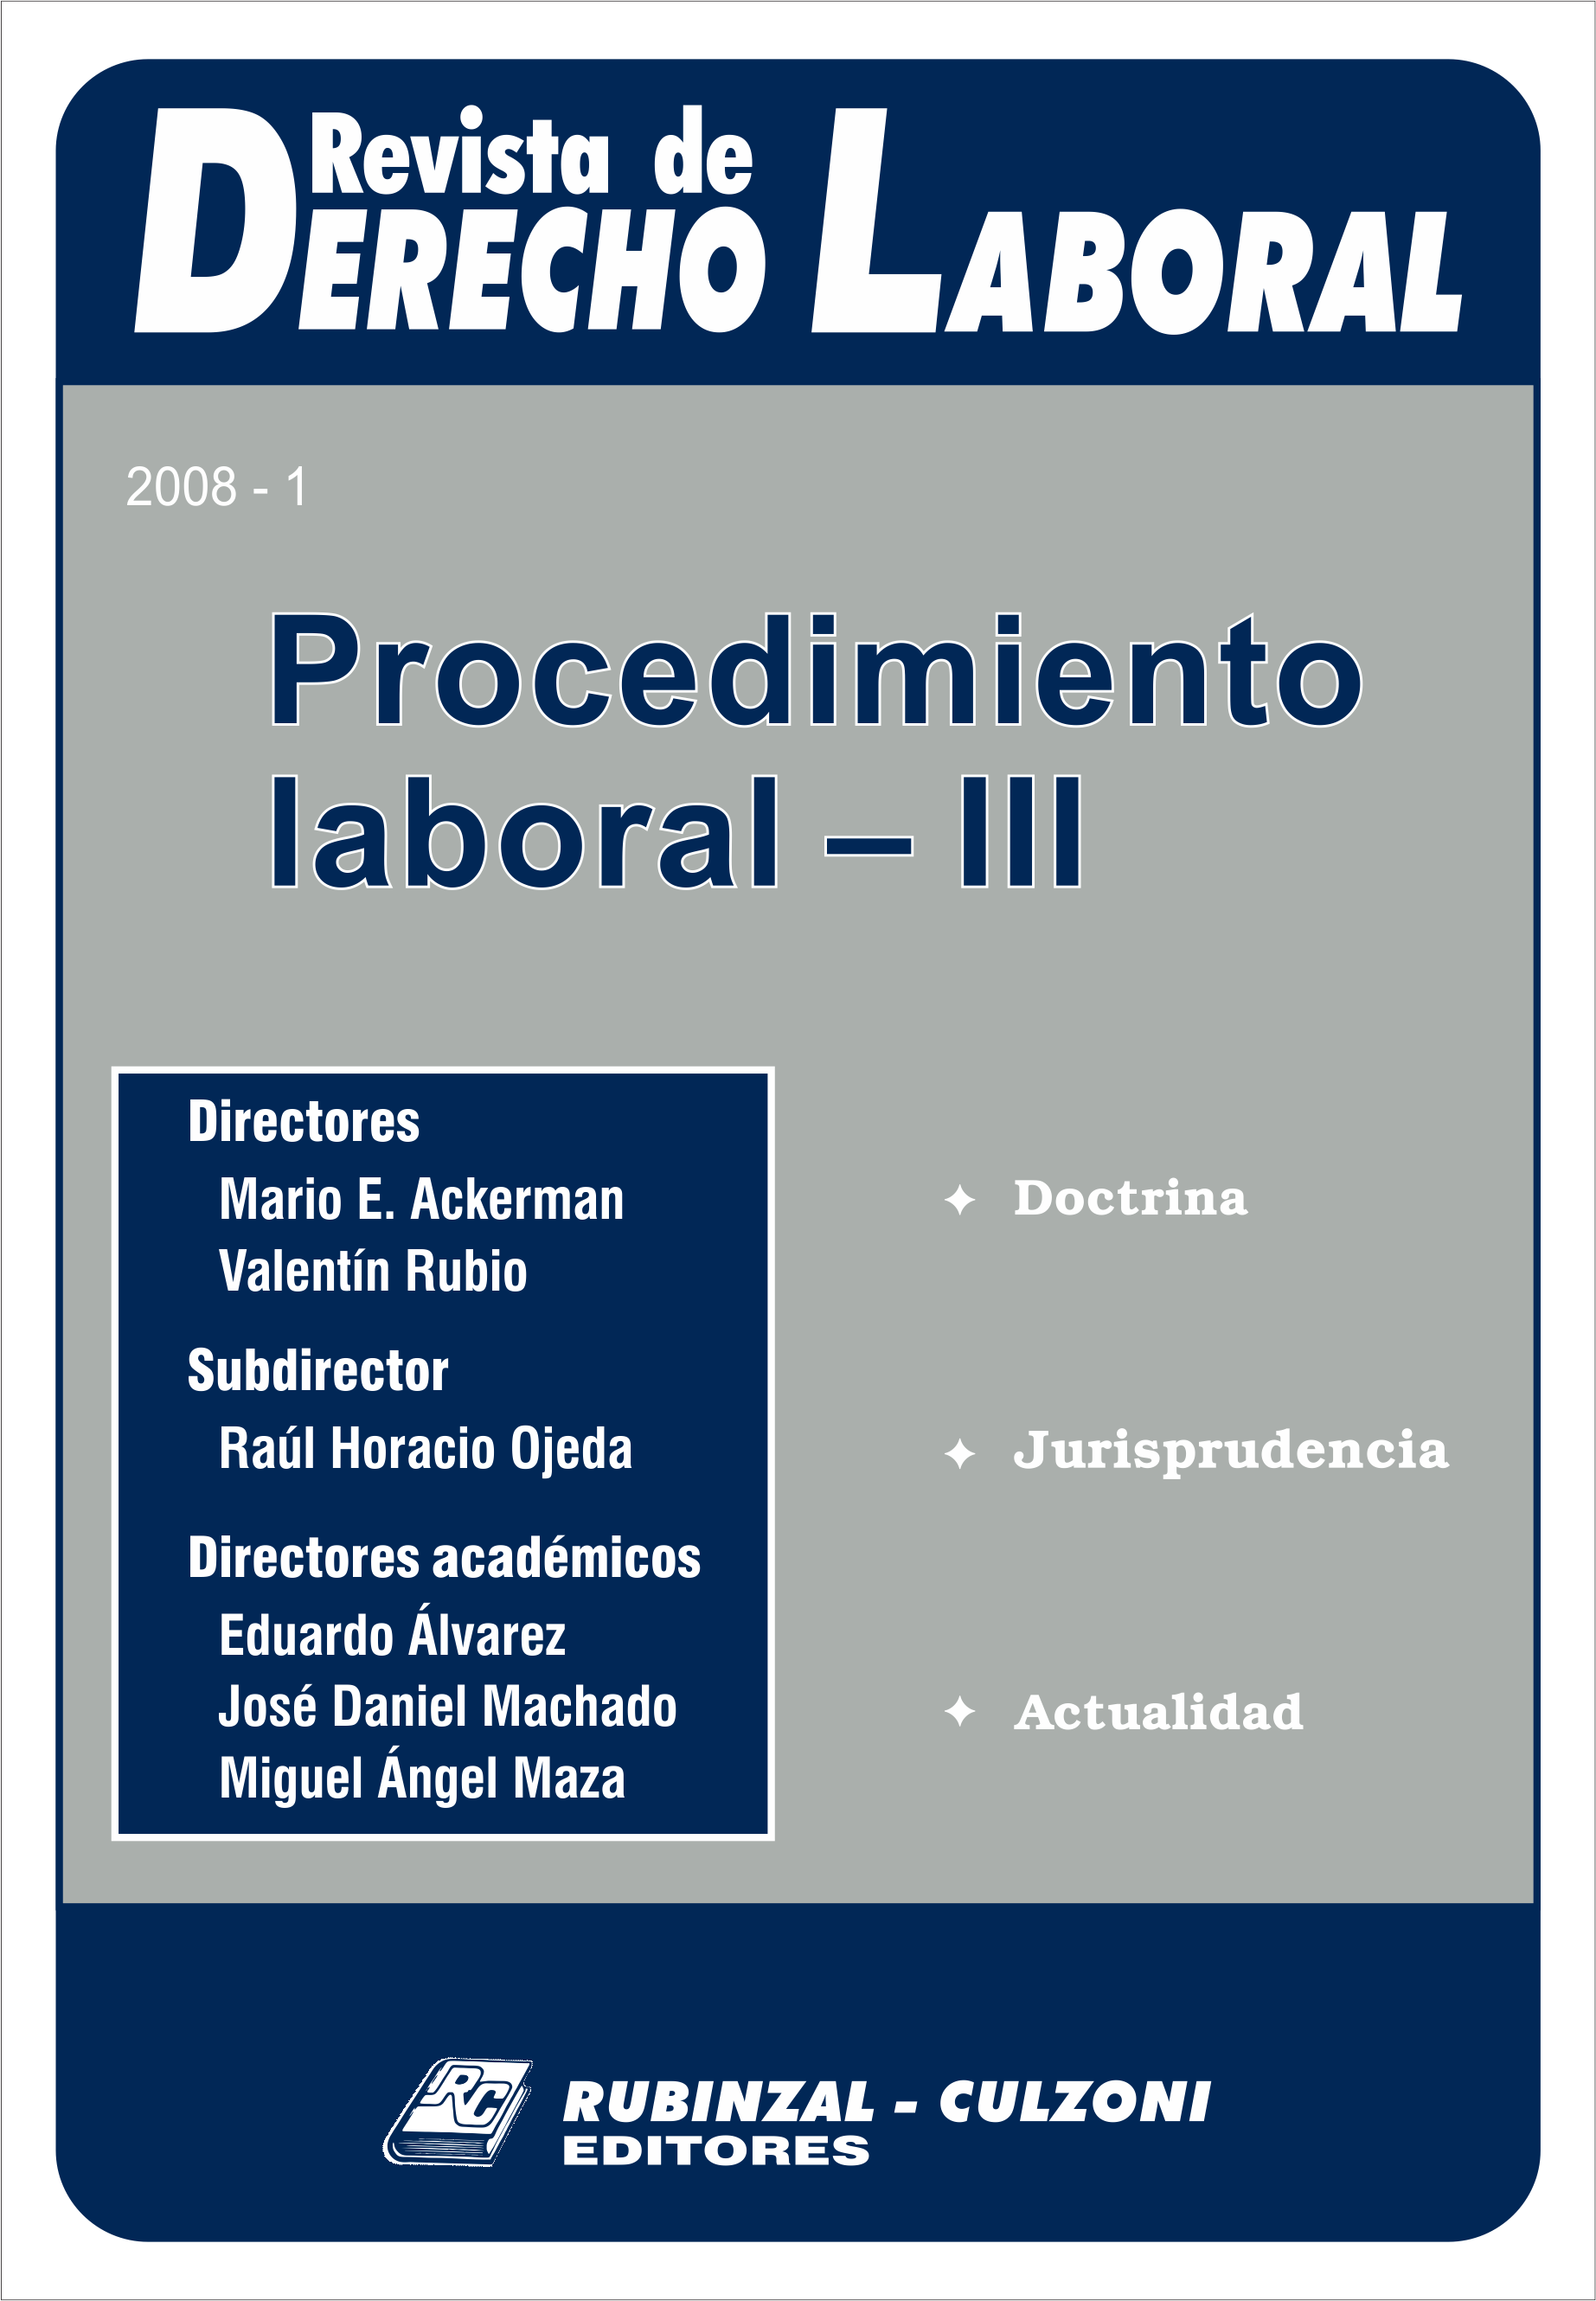 Revista de Derecho Laboral - Procedimiento Laboral - III.